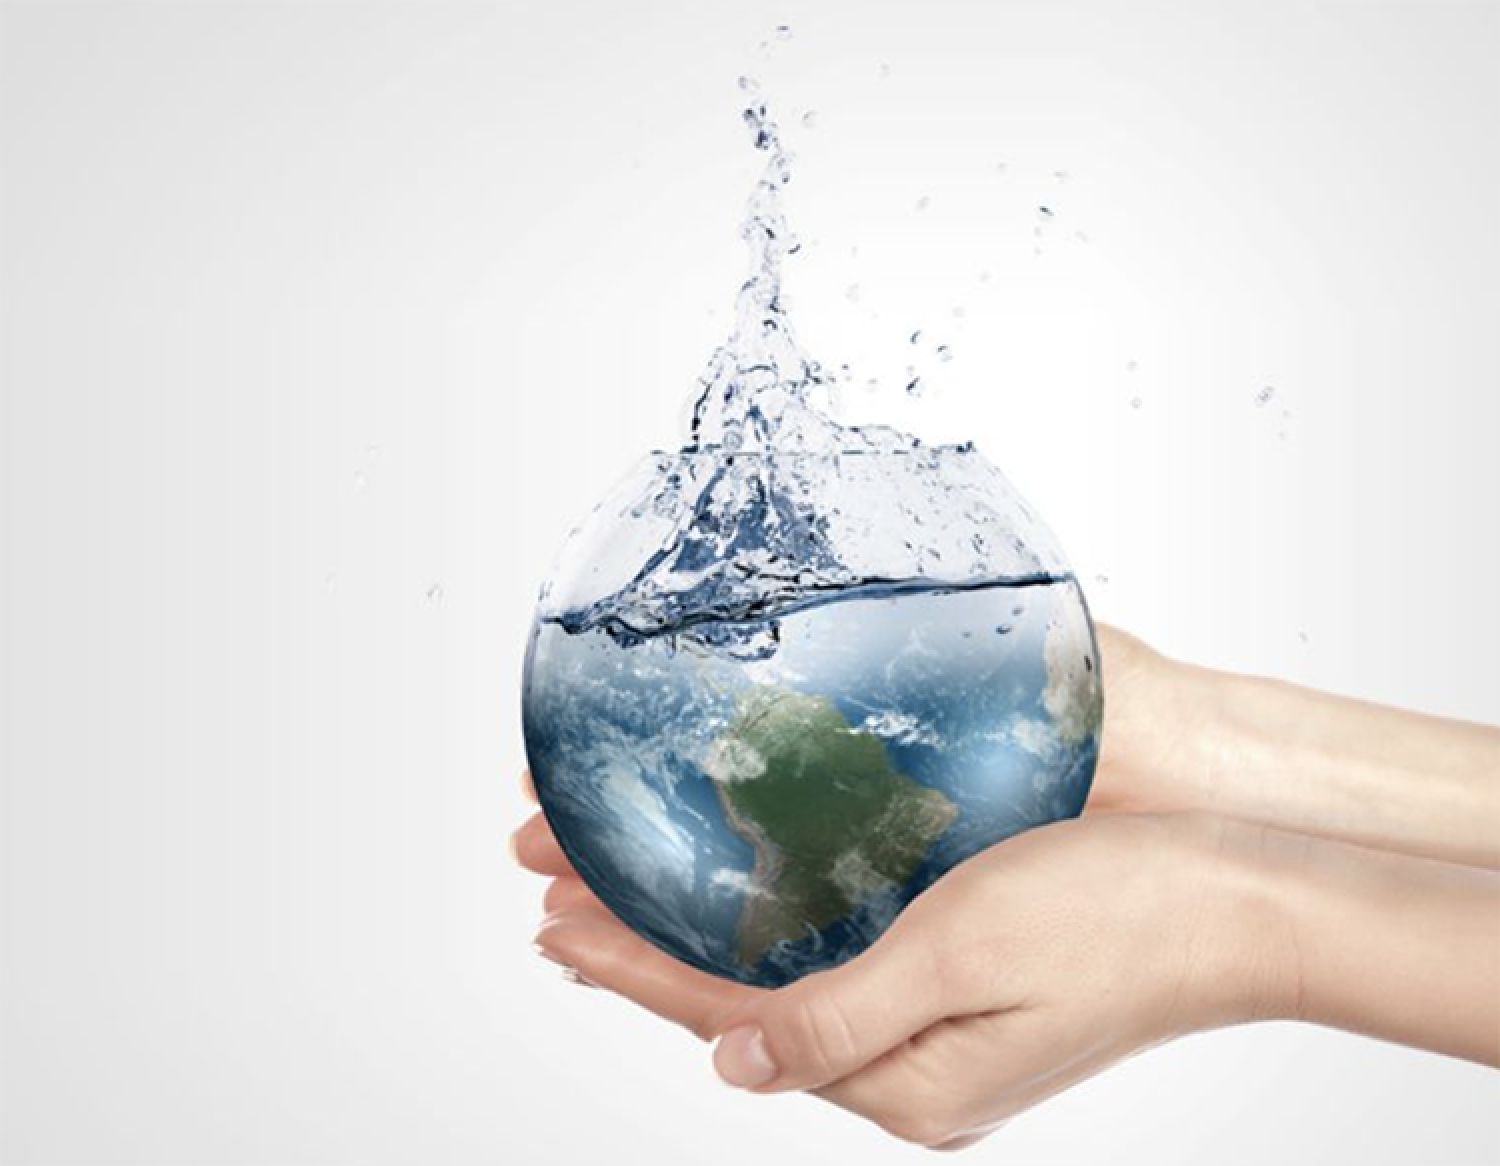 L'acqua: risorsa compromessa da inquinamenti e sprechi